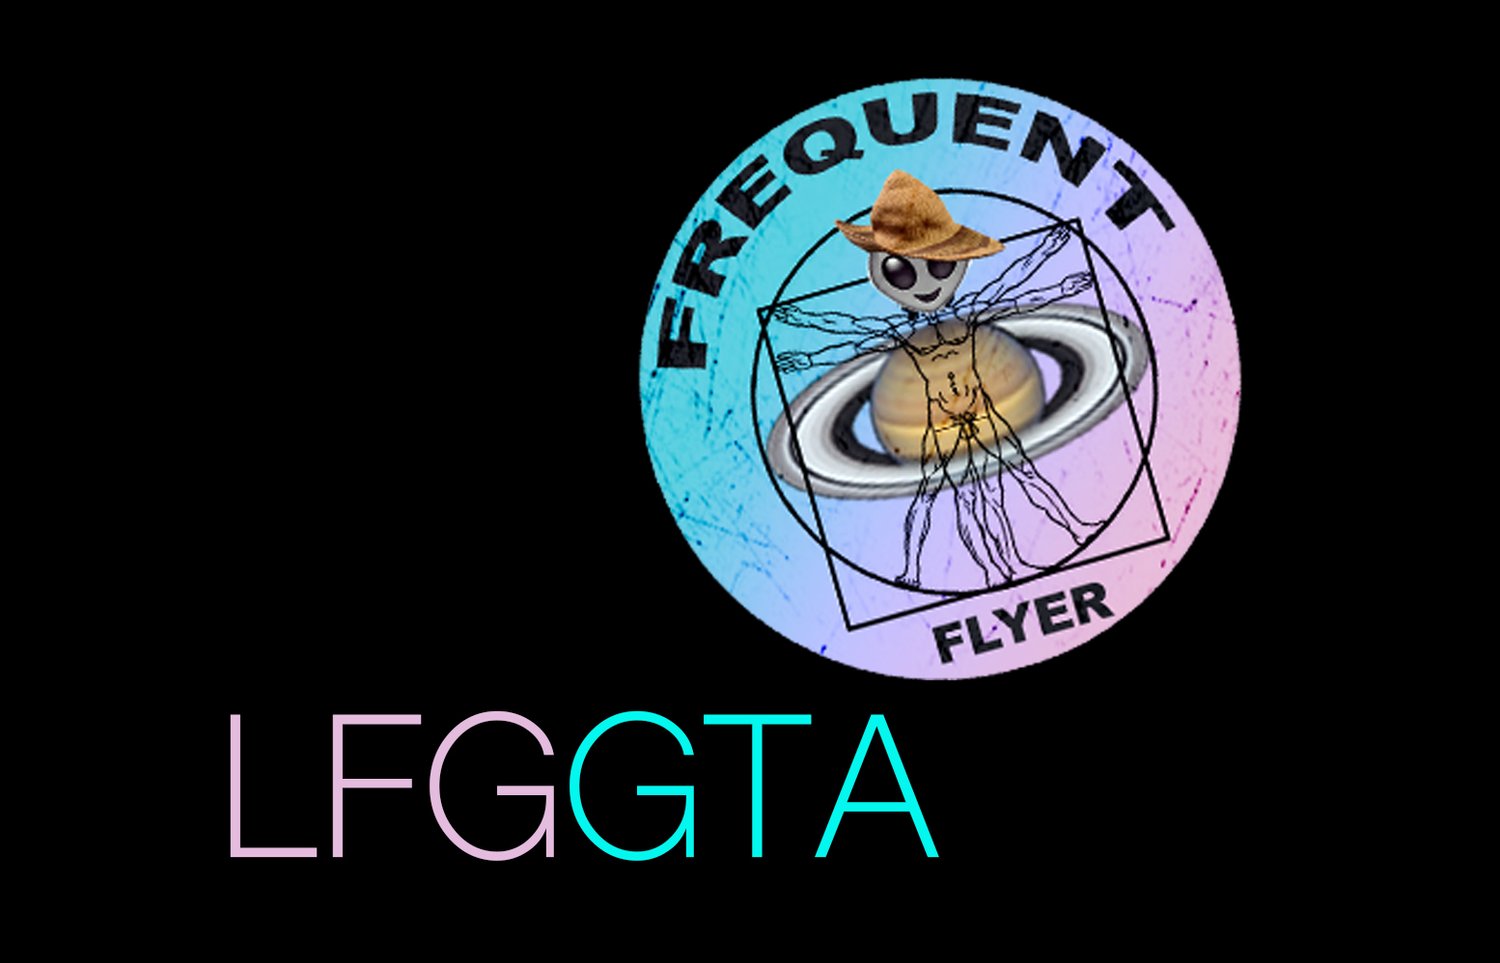 LFG/GTA